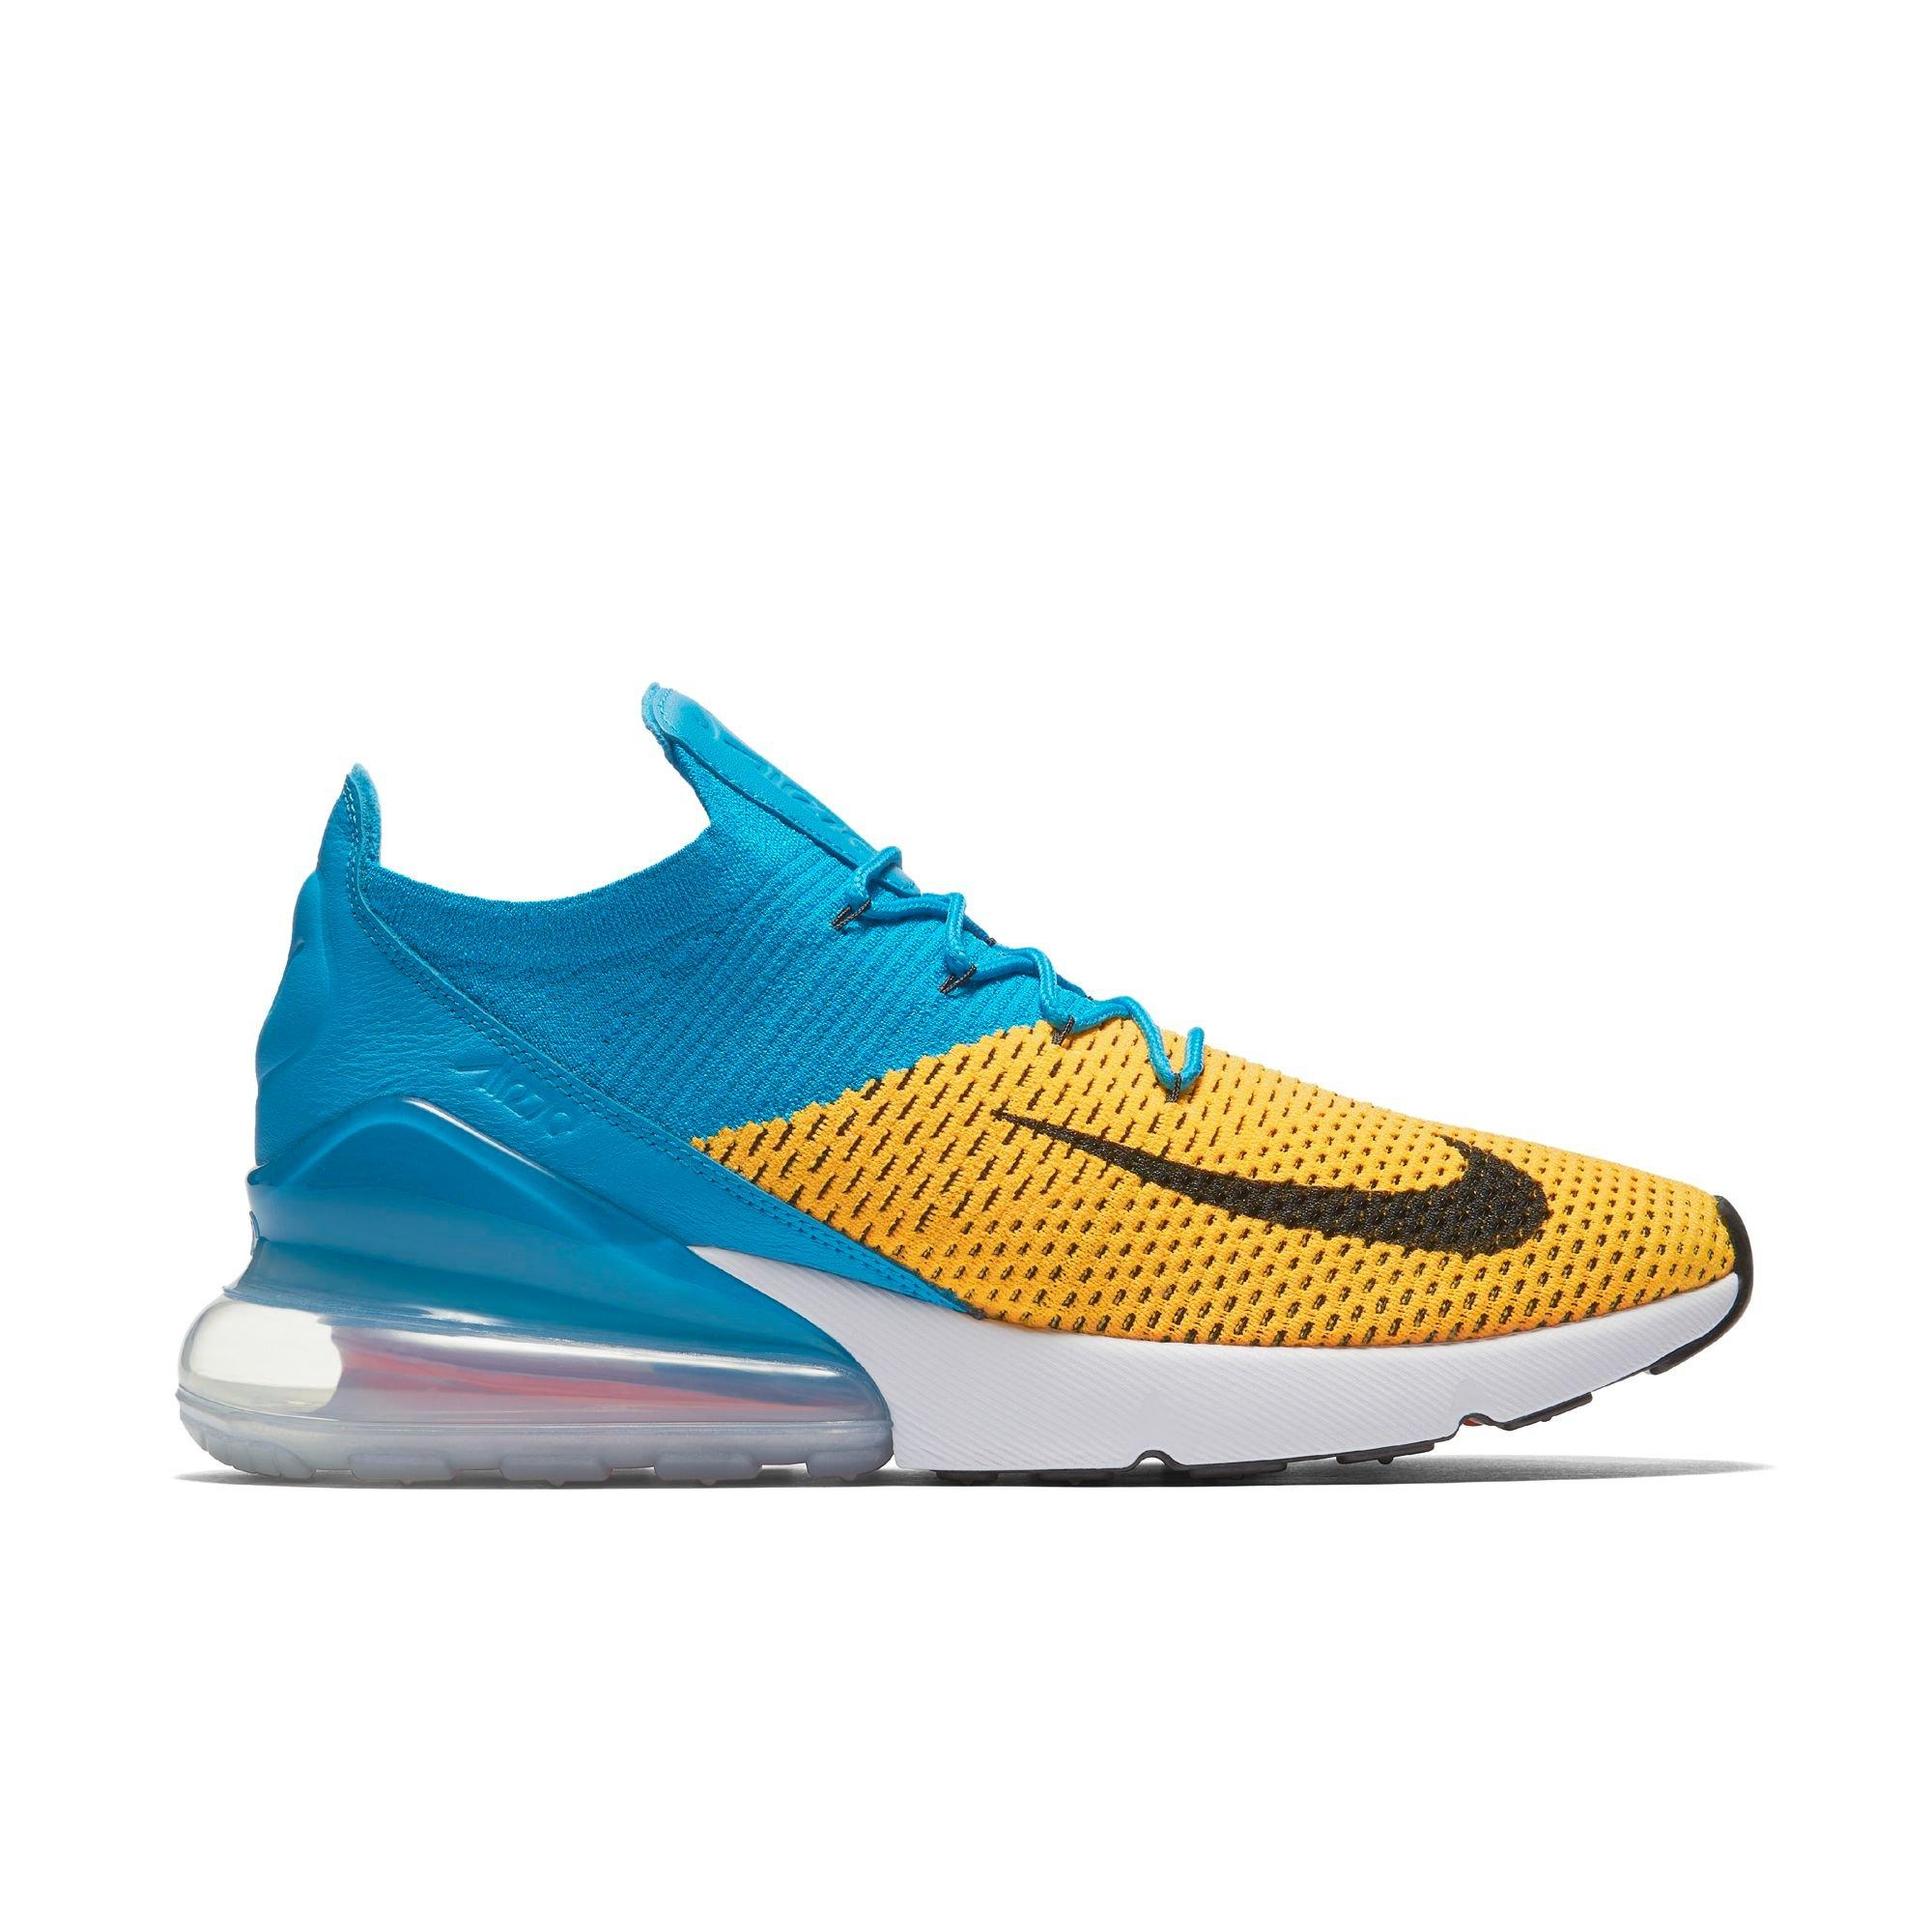 Nike Air Max Flyknit "Laser Orange" Men's Shoe